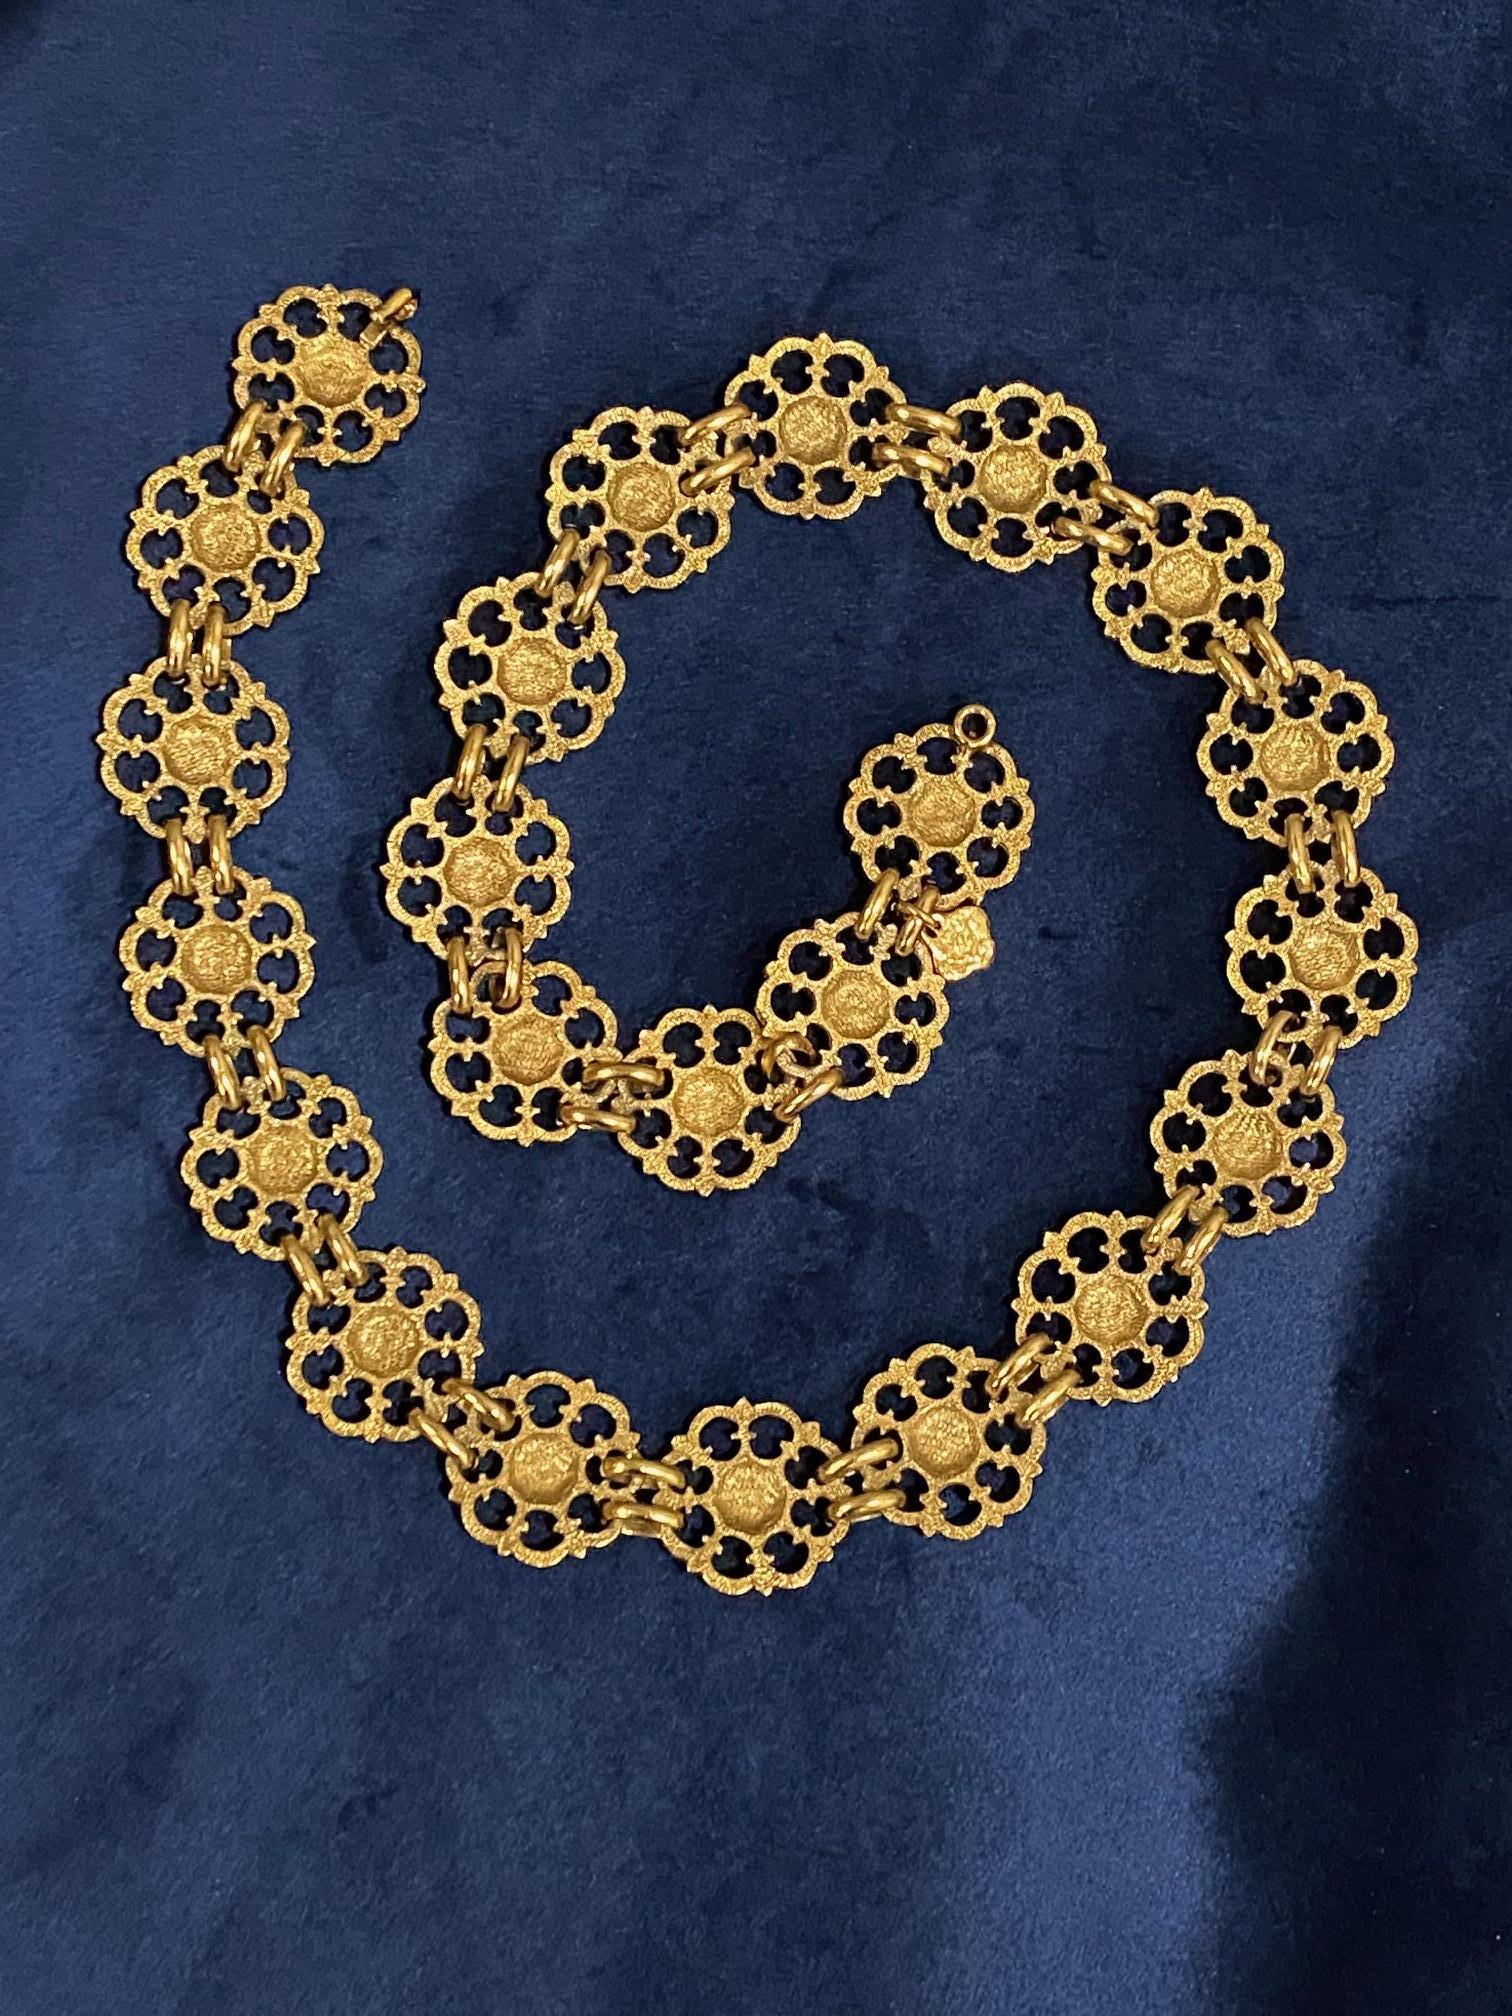 Women's or Men's Yves Saint Laurent, Rive Gauche, 1980s Gold Belt / Necklace For Sale